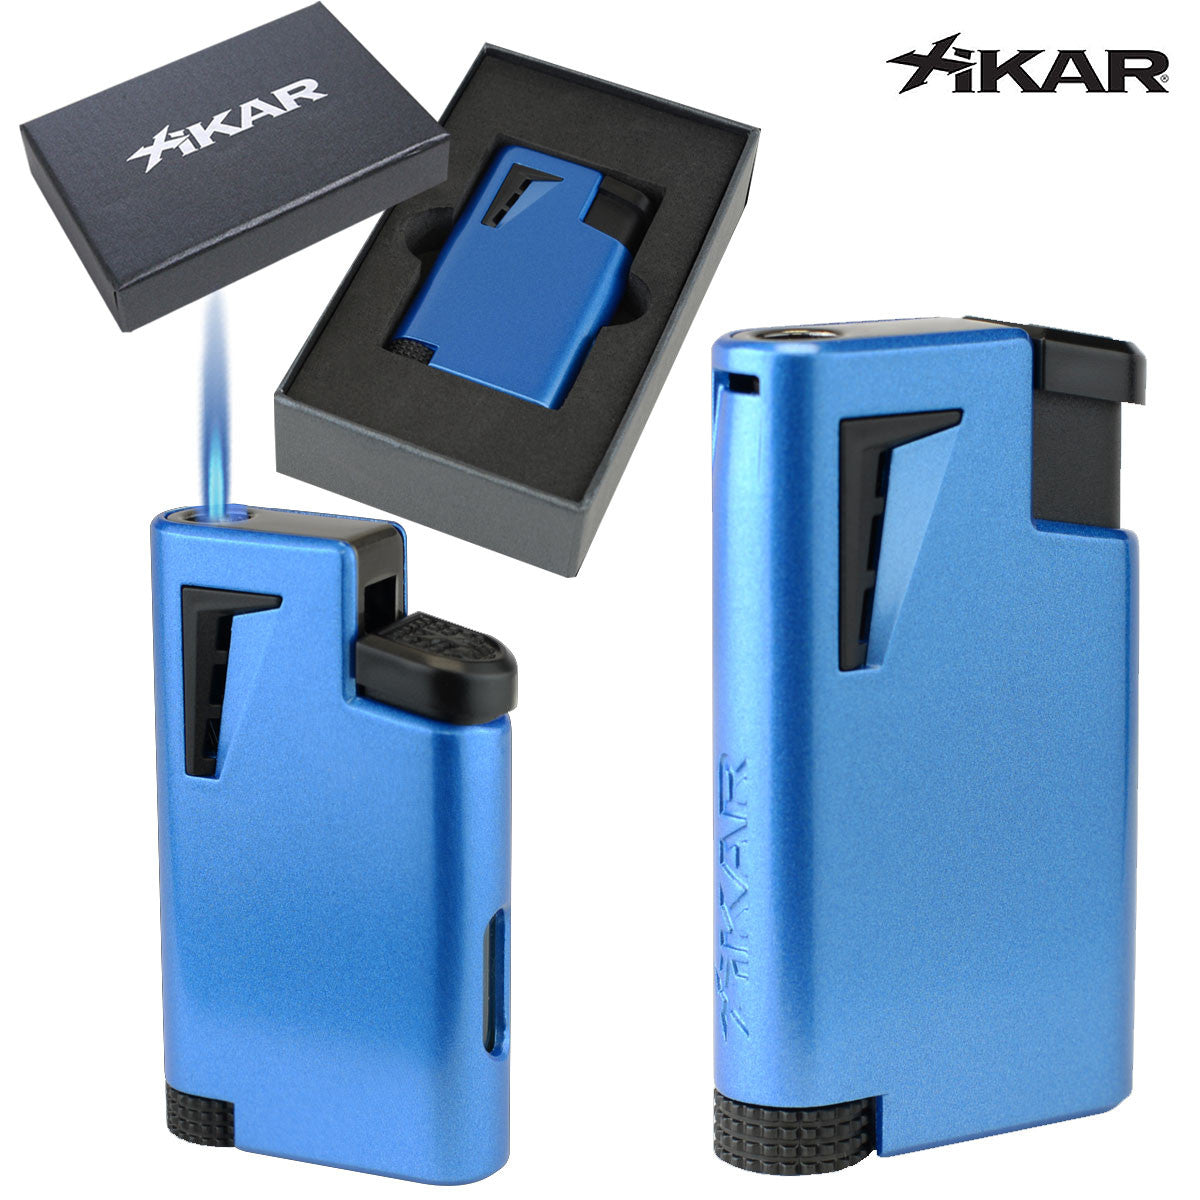 XIKAR® XK1 Single-jet Flame Lighter